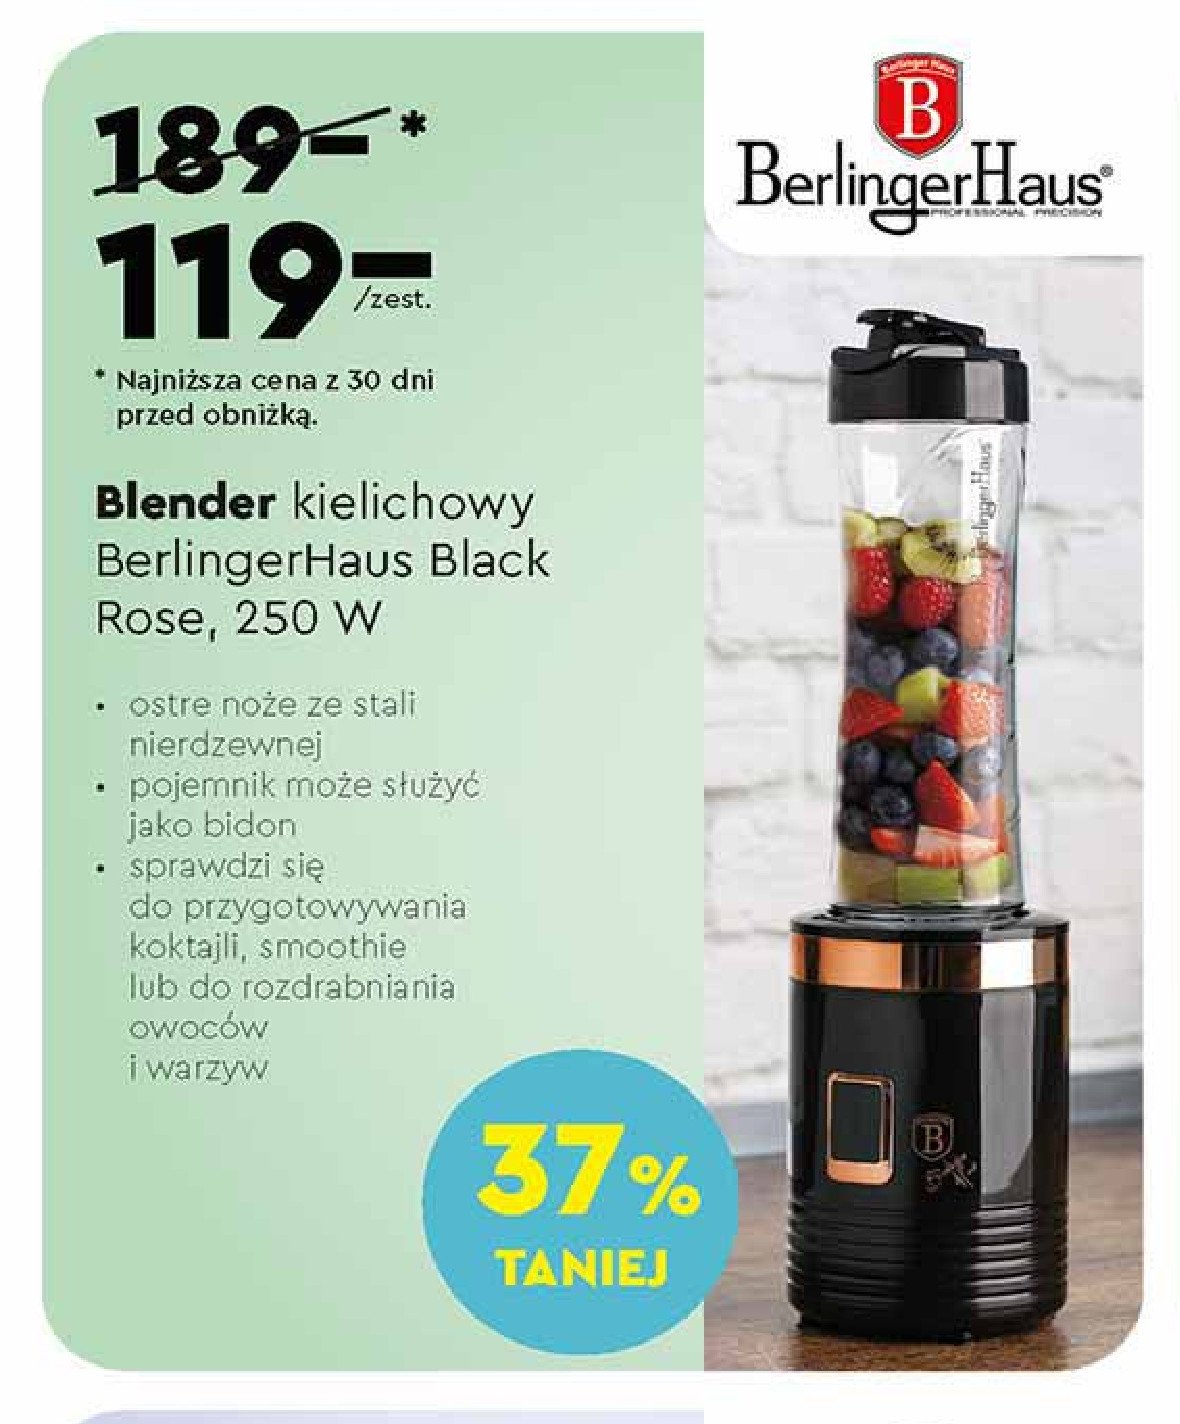 Blender kielichowy 250 w Berlinger haus promocja